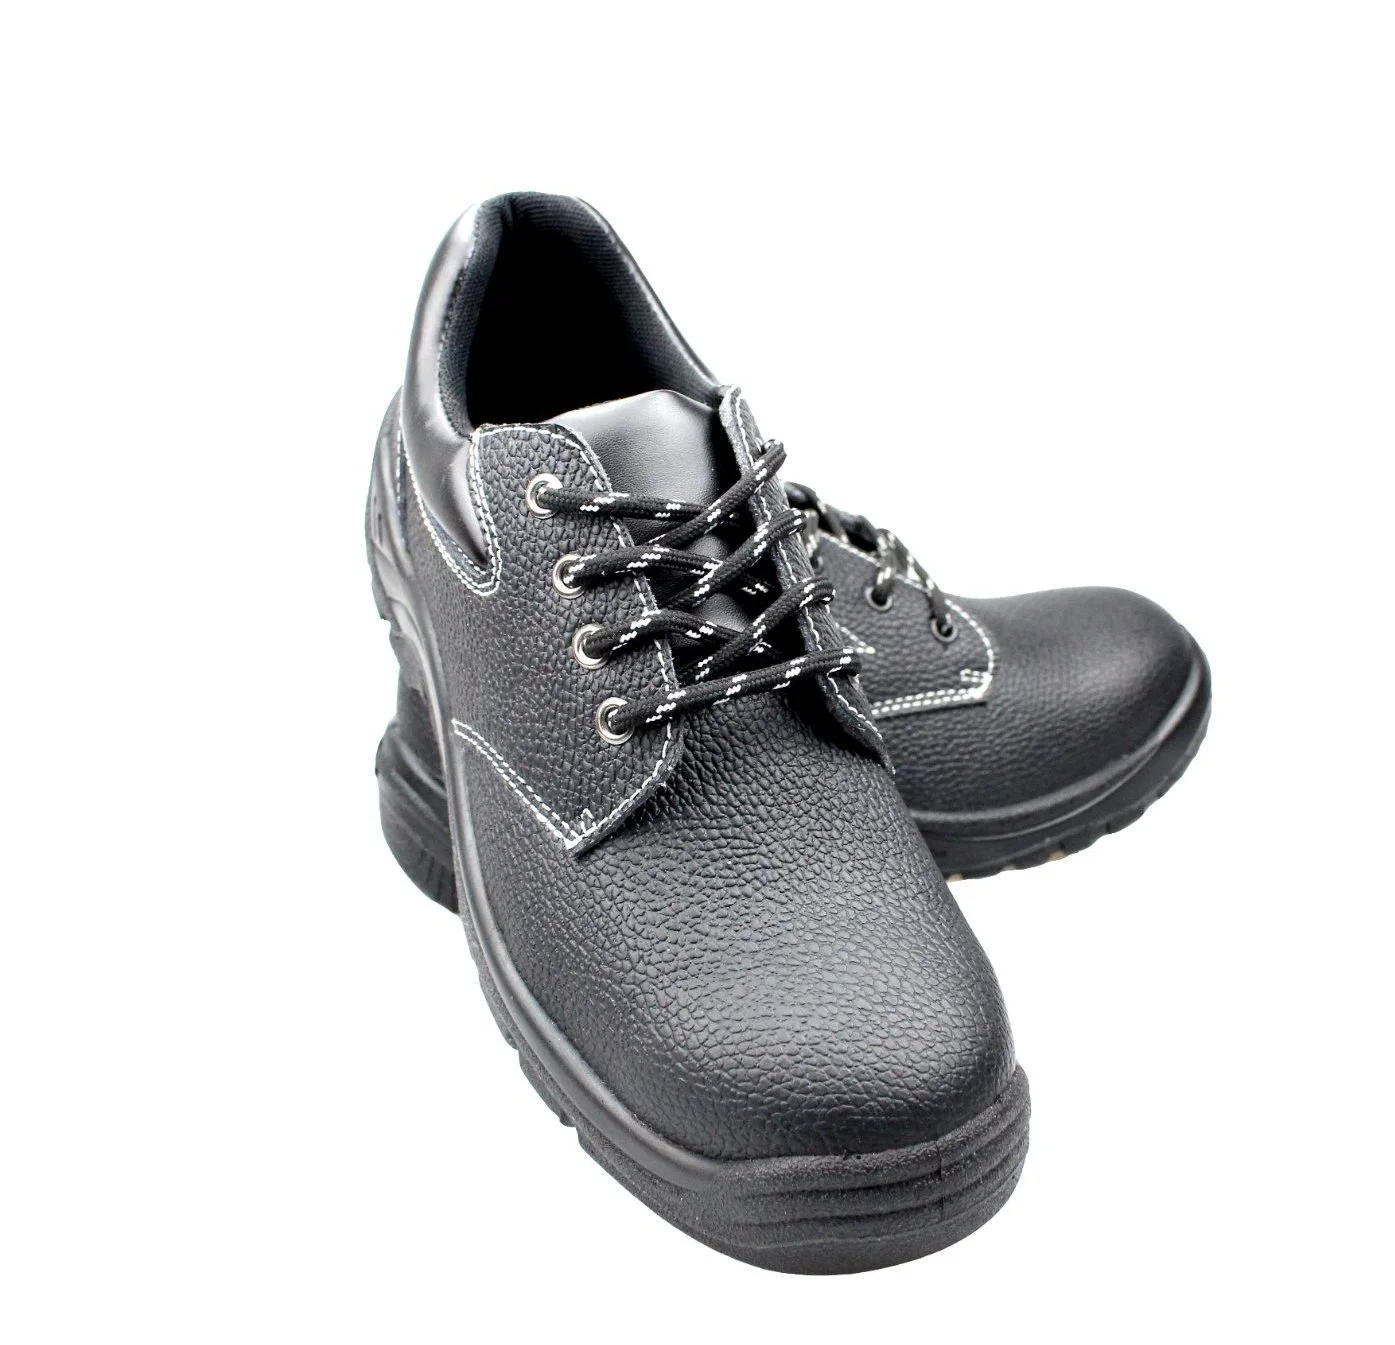 Zapatos de seguridad de hombres al por mayor zapatos de seguridad botas con puntera y la placa de acero Zapatos Calzado de trabajo de la mano de obra